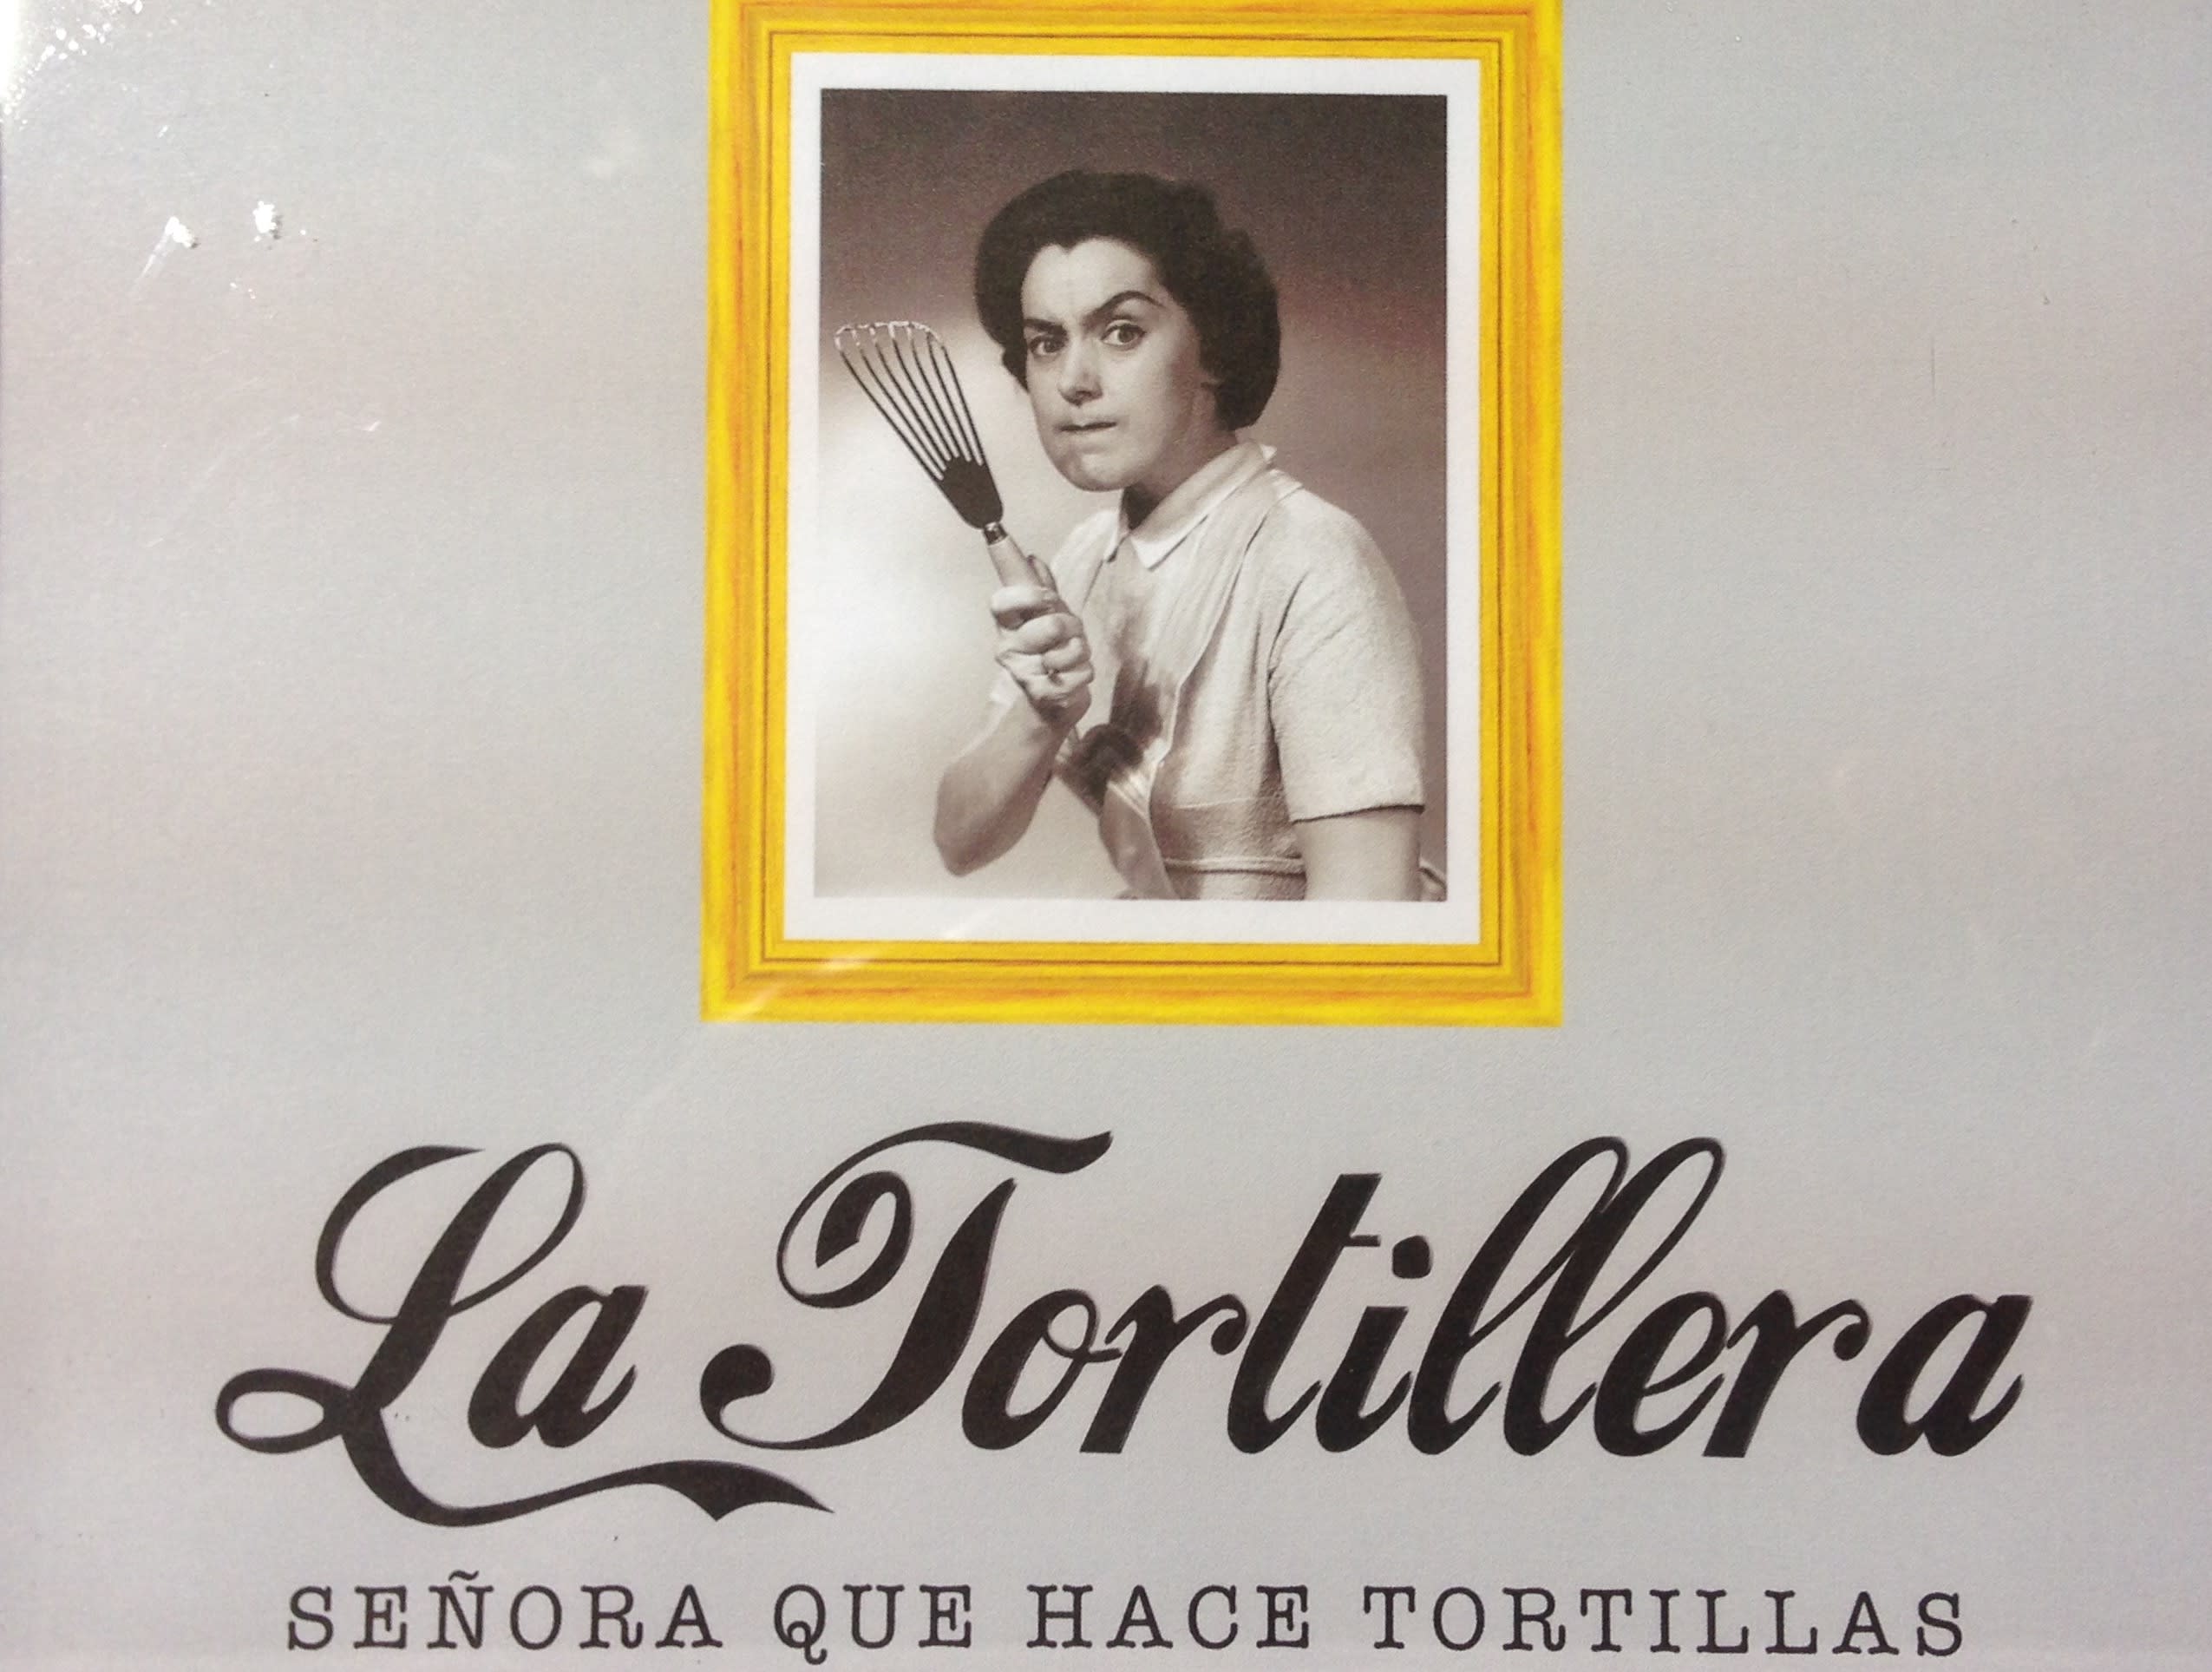 La Tortillera